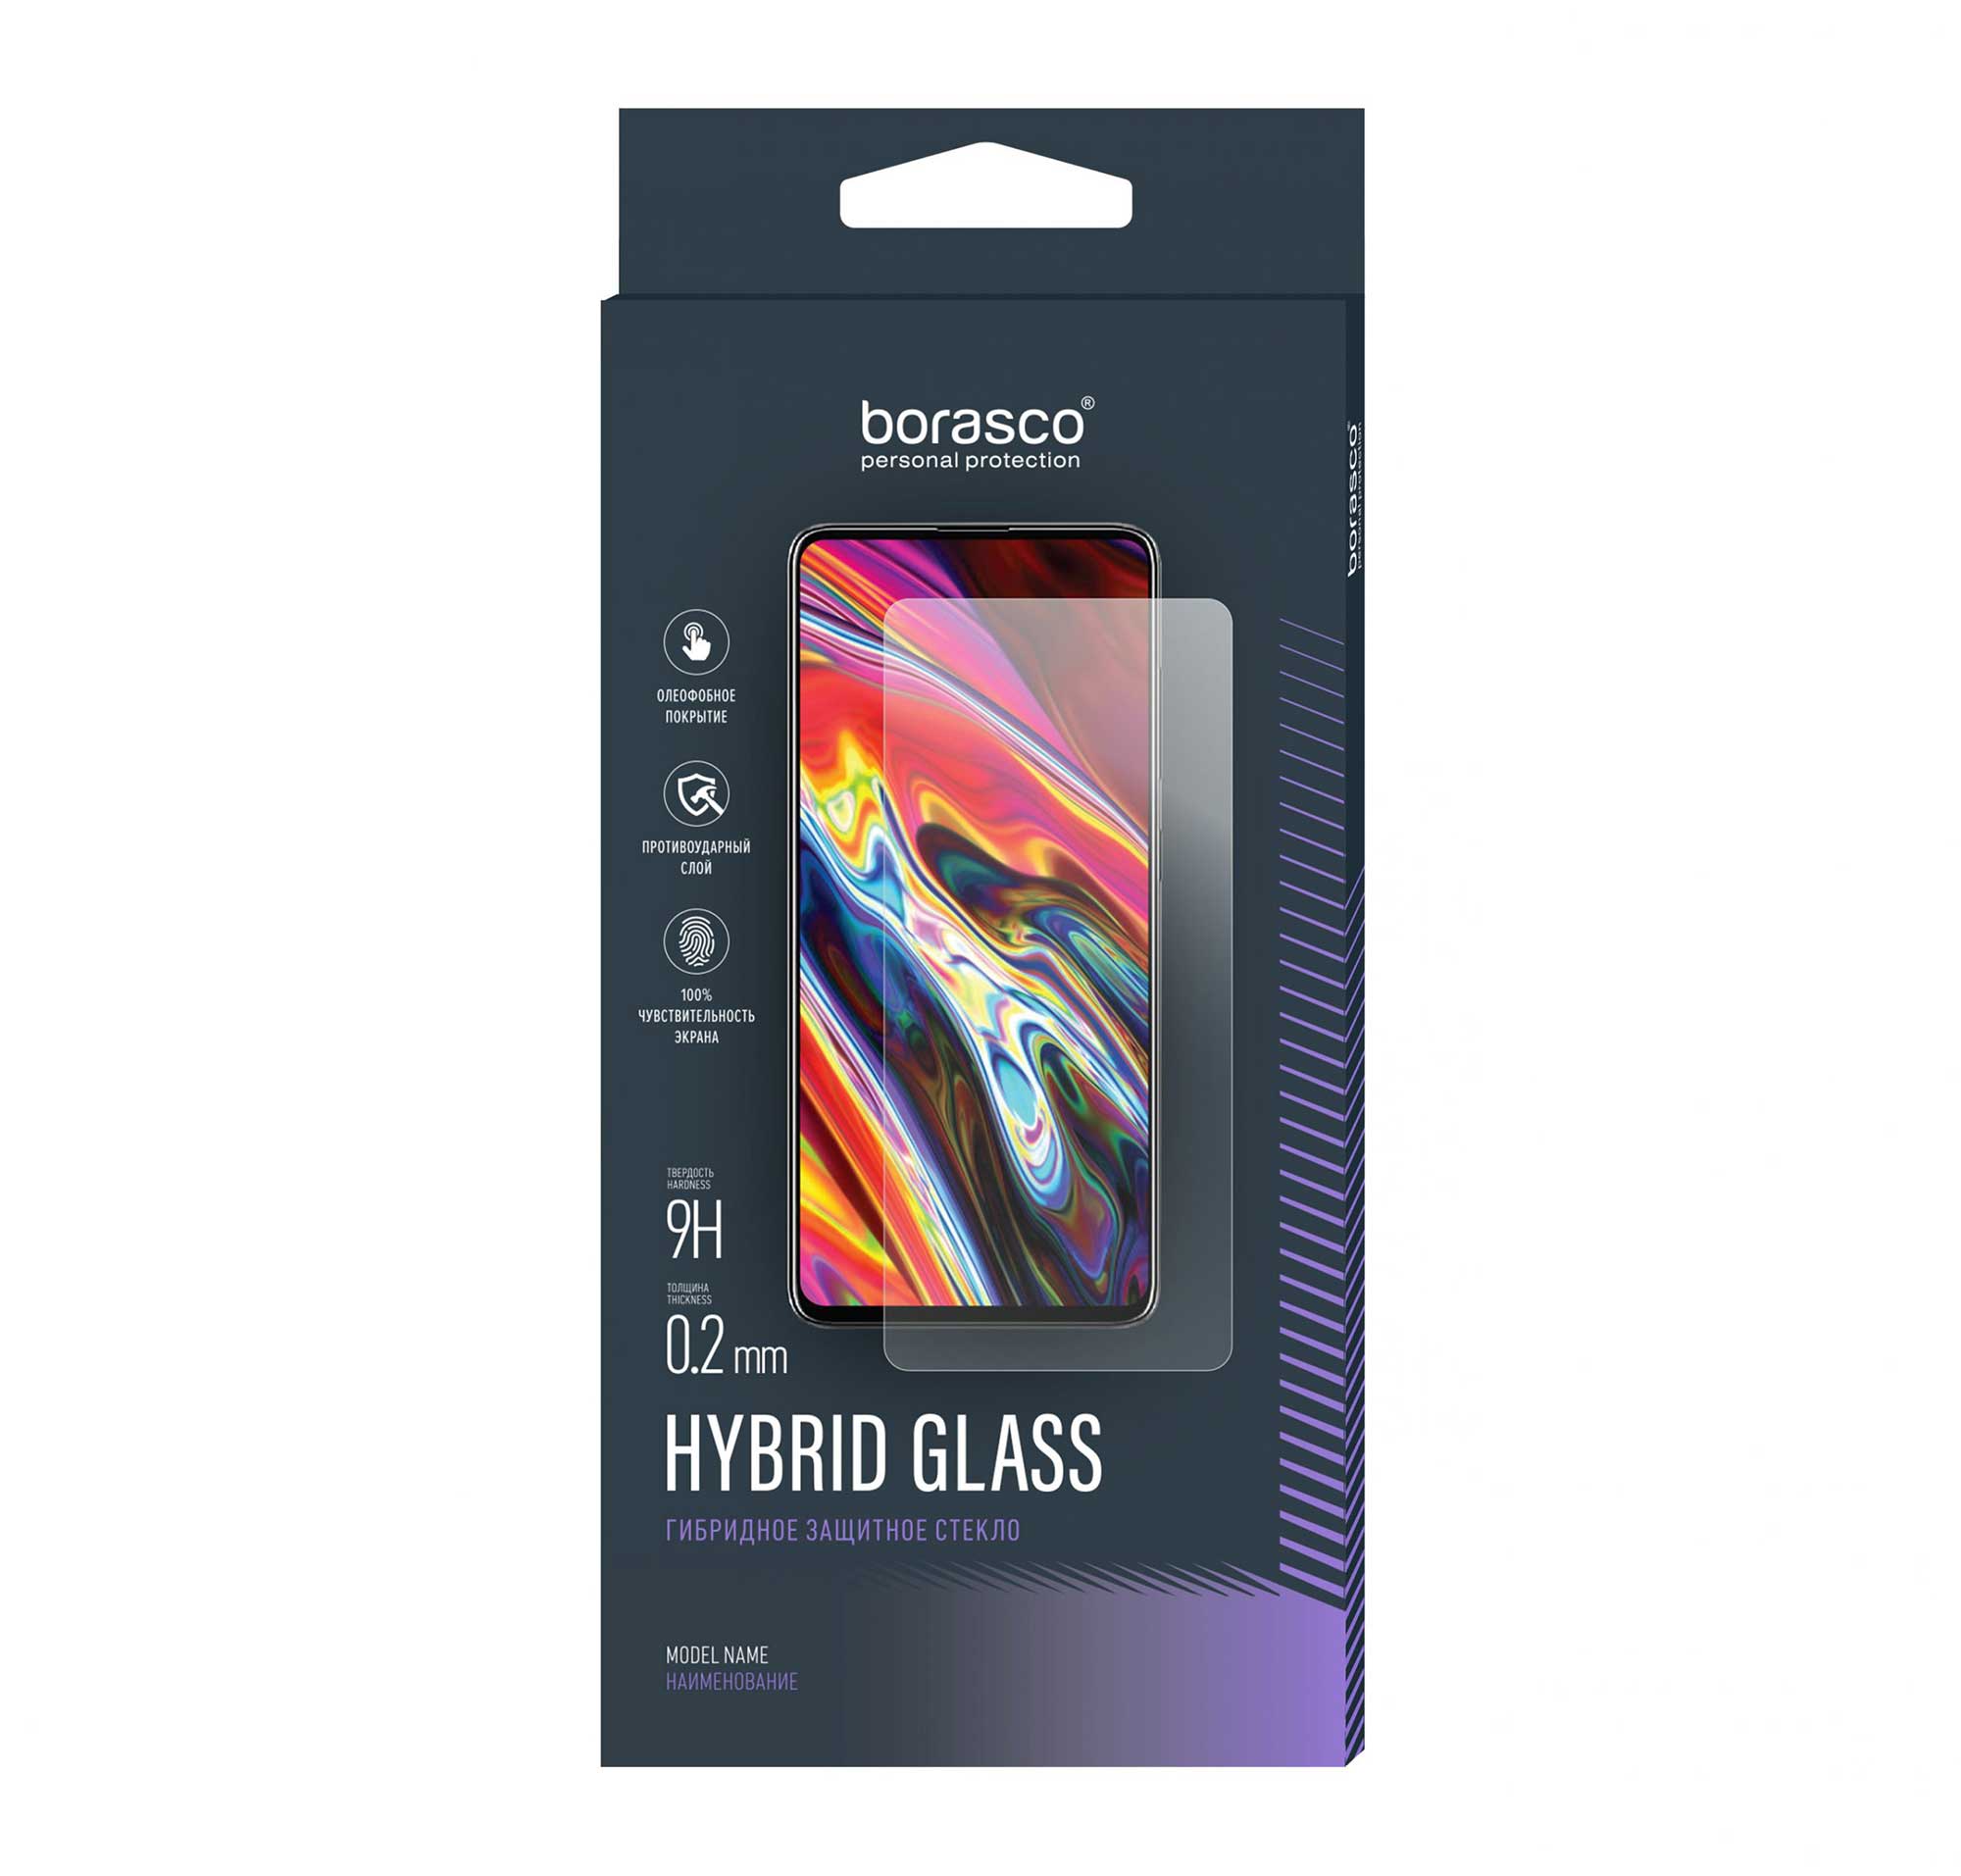 Защитное стекло BoraSCO Hybrid Glass для BQ 5745L CLEVER защитное стекло для bq 5745l clever